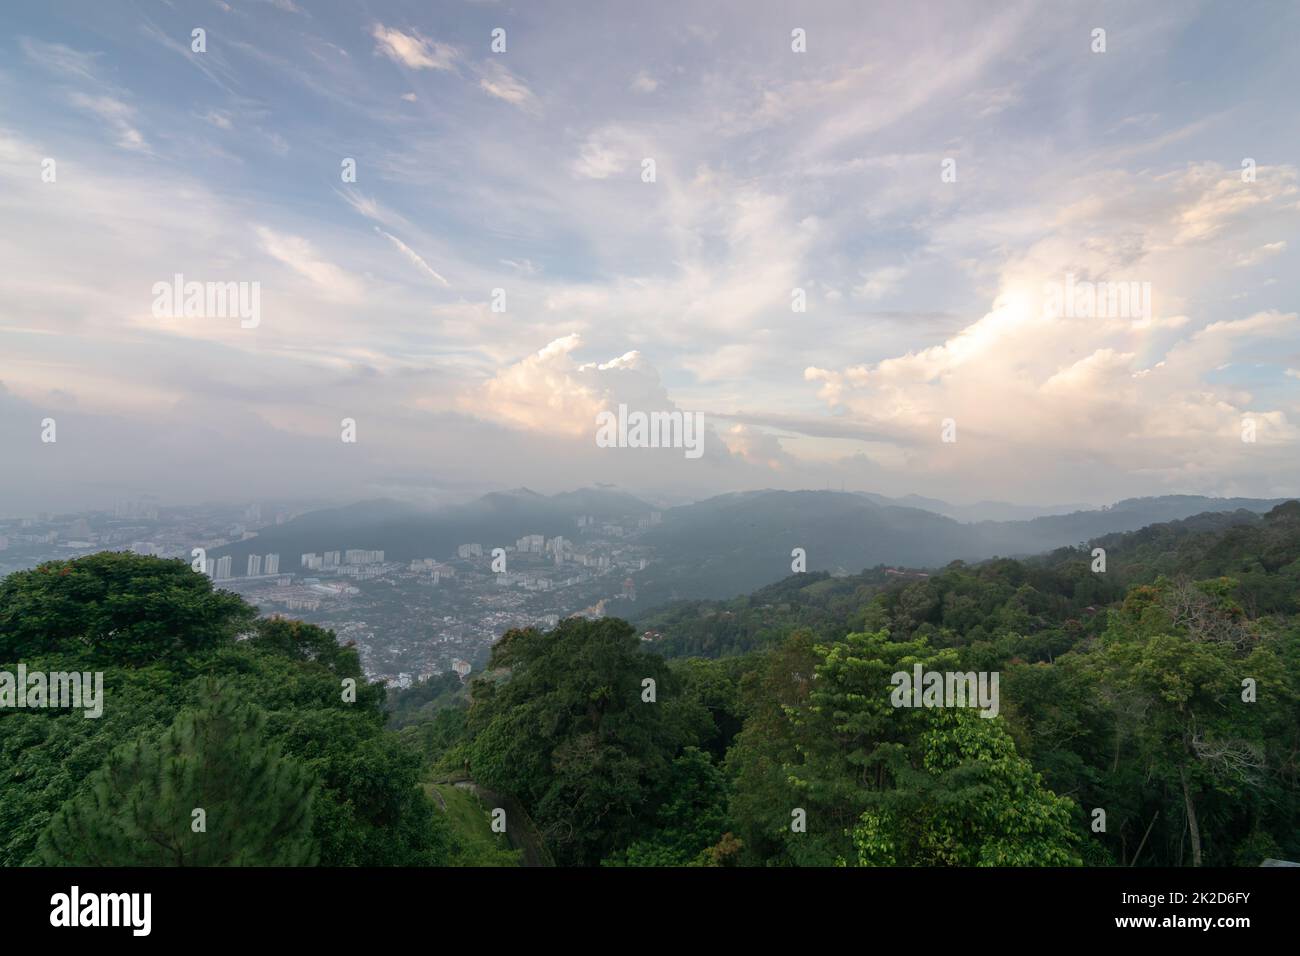 Vue sur la ville de PATA Terubong depuis une colline verdoyante Banque D'Images